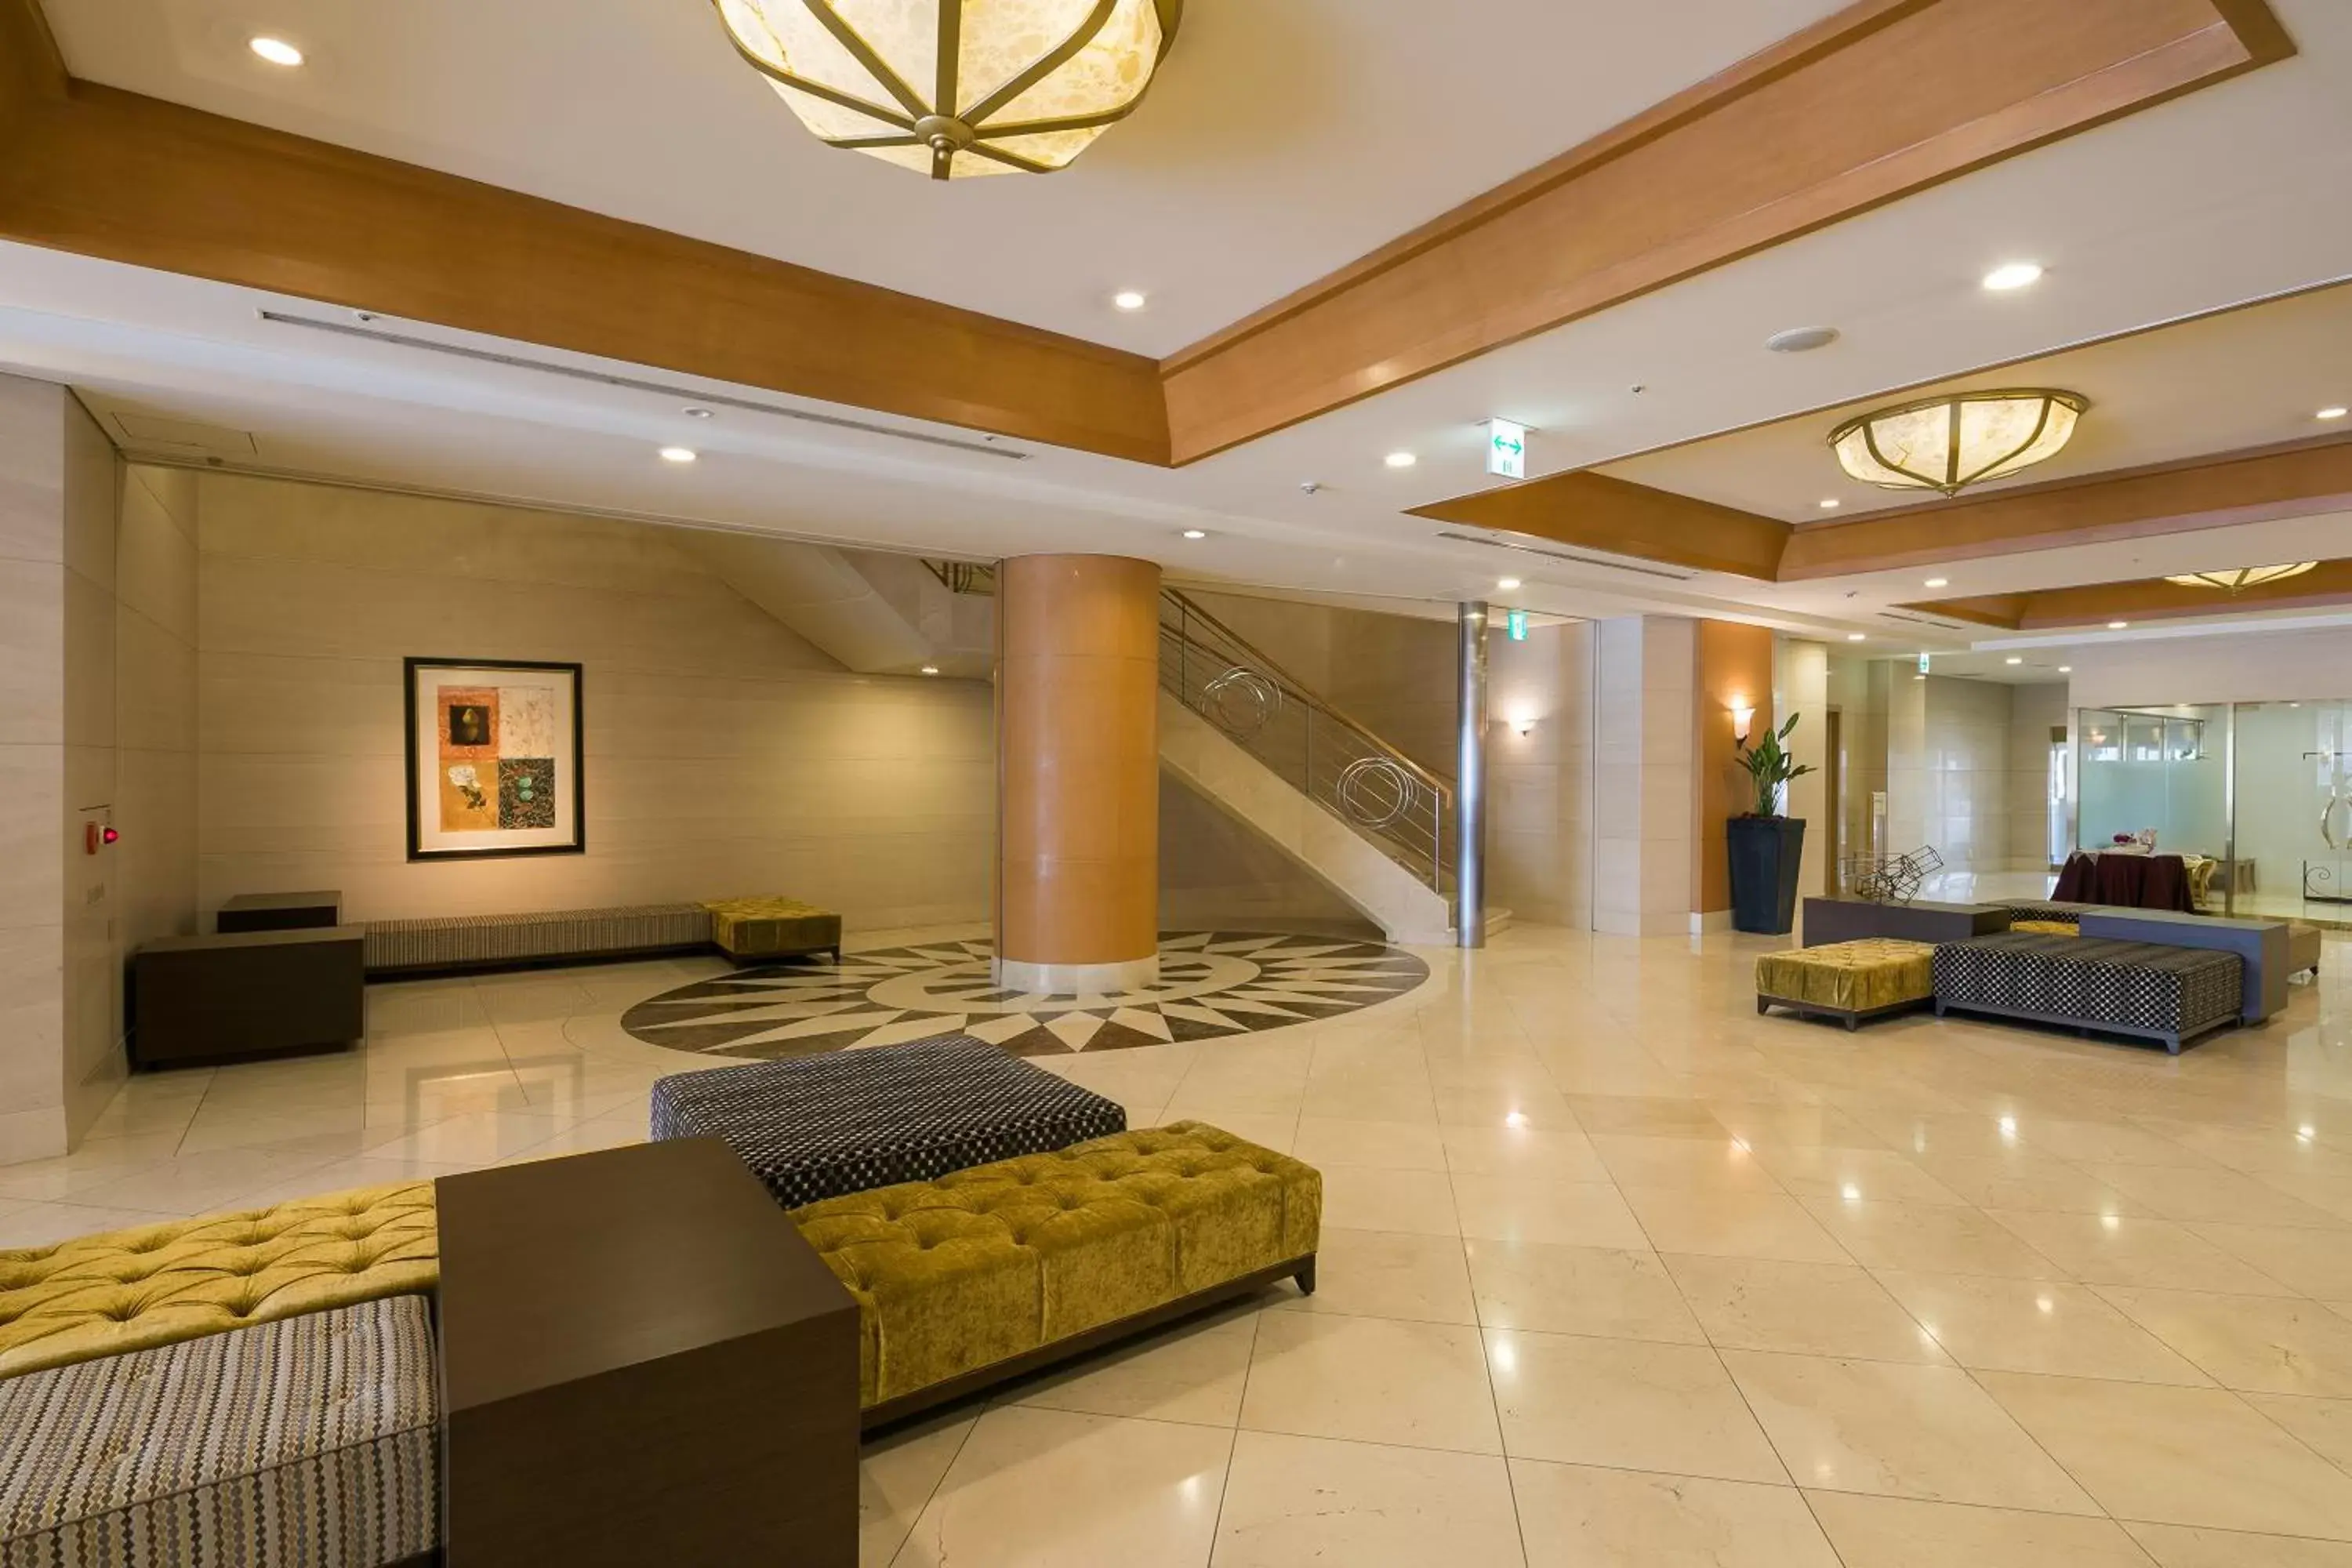 Lobby or reception, Lobby/Reception in HOTEL MYSTAYS Matsuyama